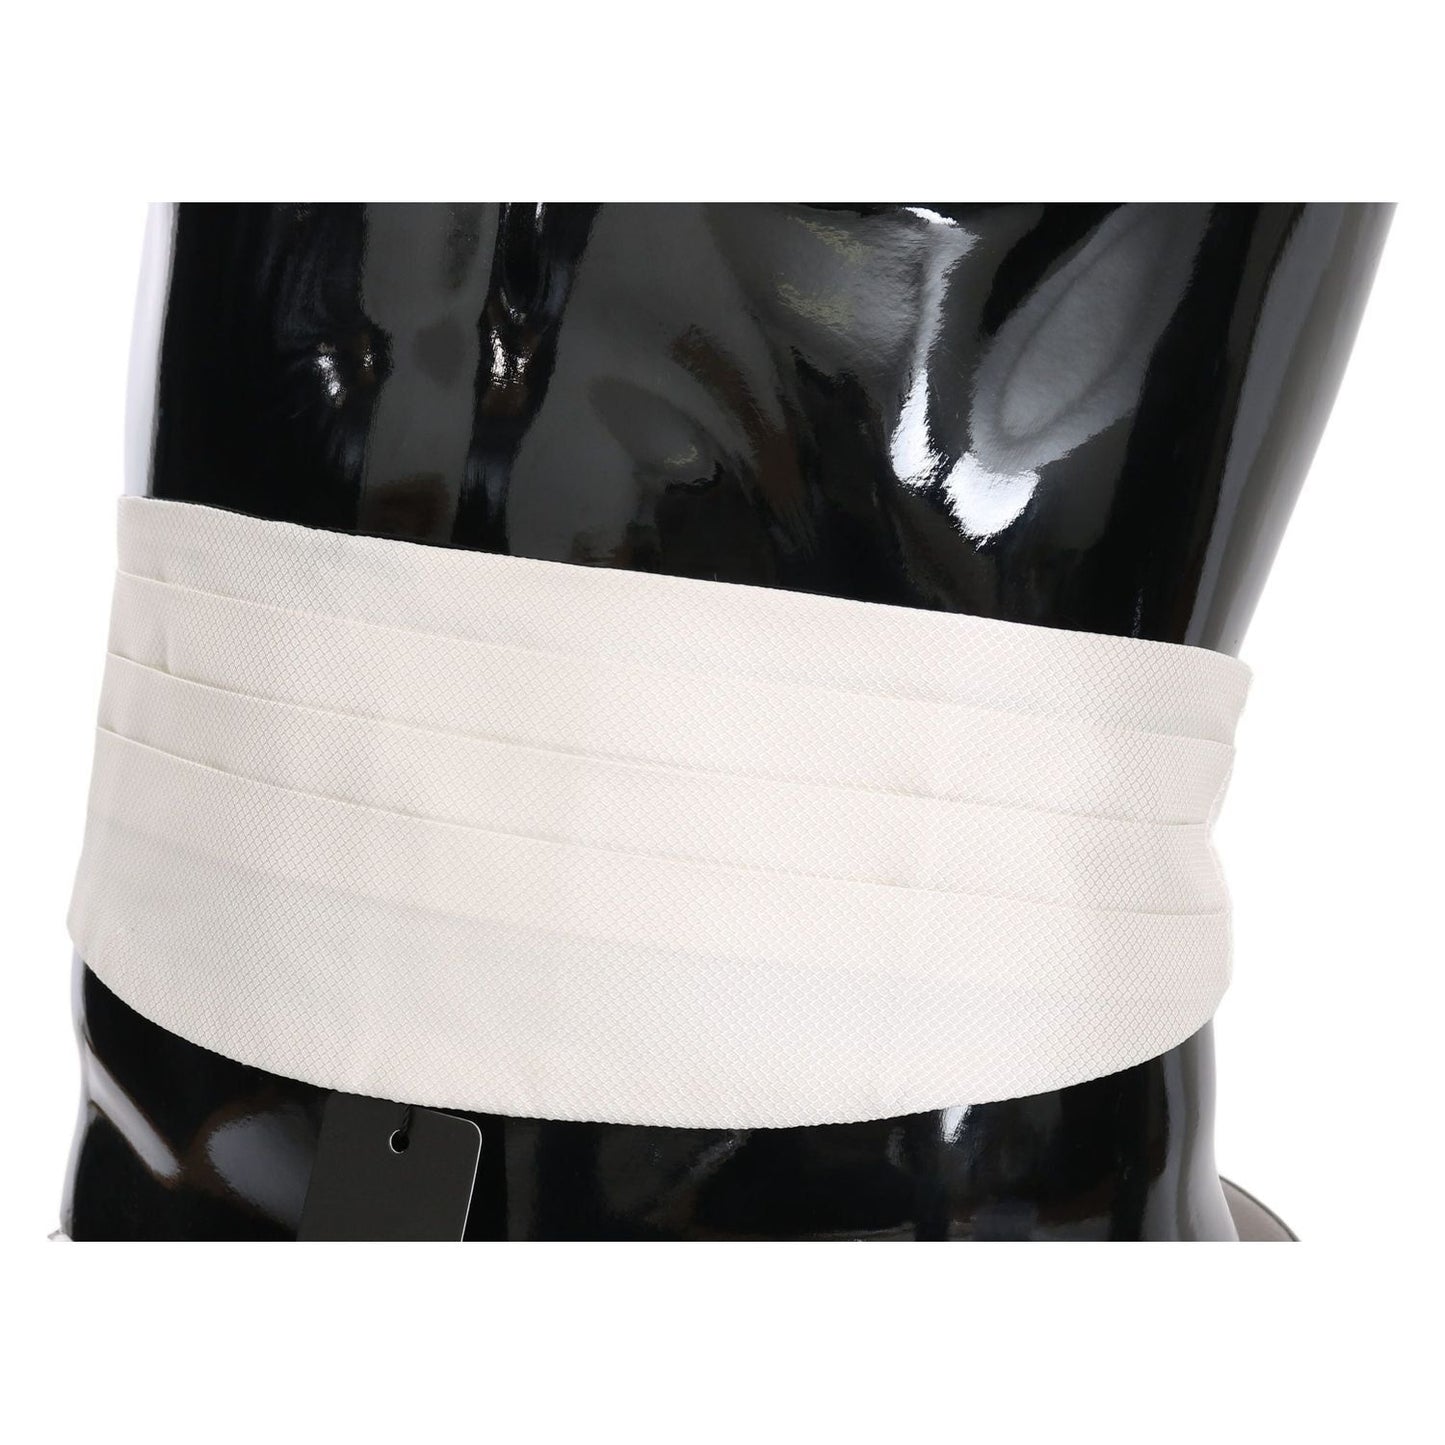 Dolce & Gabbana Elegant Silk White Patterned Cummerbund white-men-waist-belt-100-silk-cummerbund-1 IMG_2168-scaled-3af34cf8-4d9.jpg